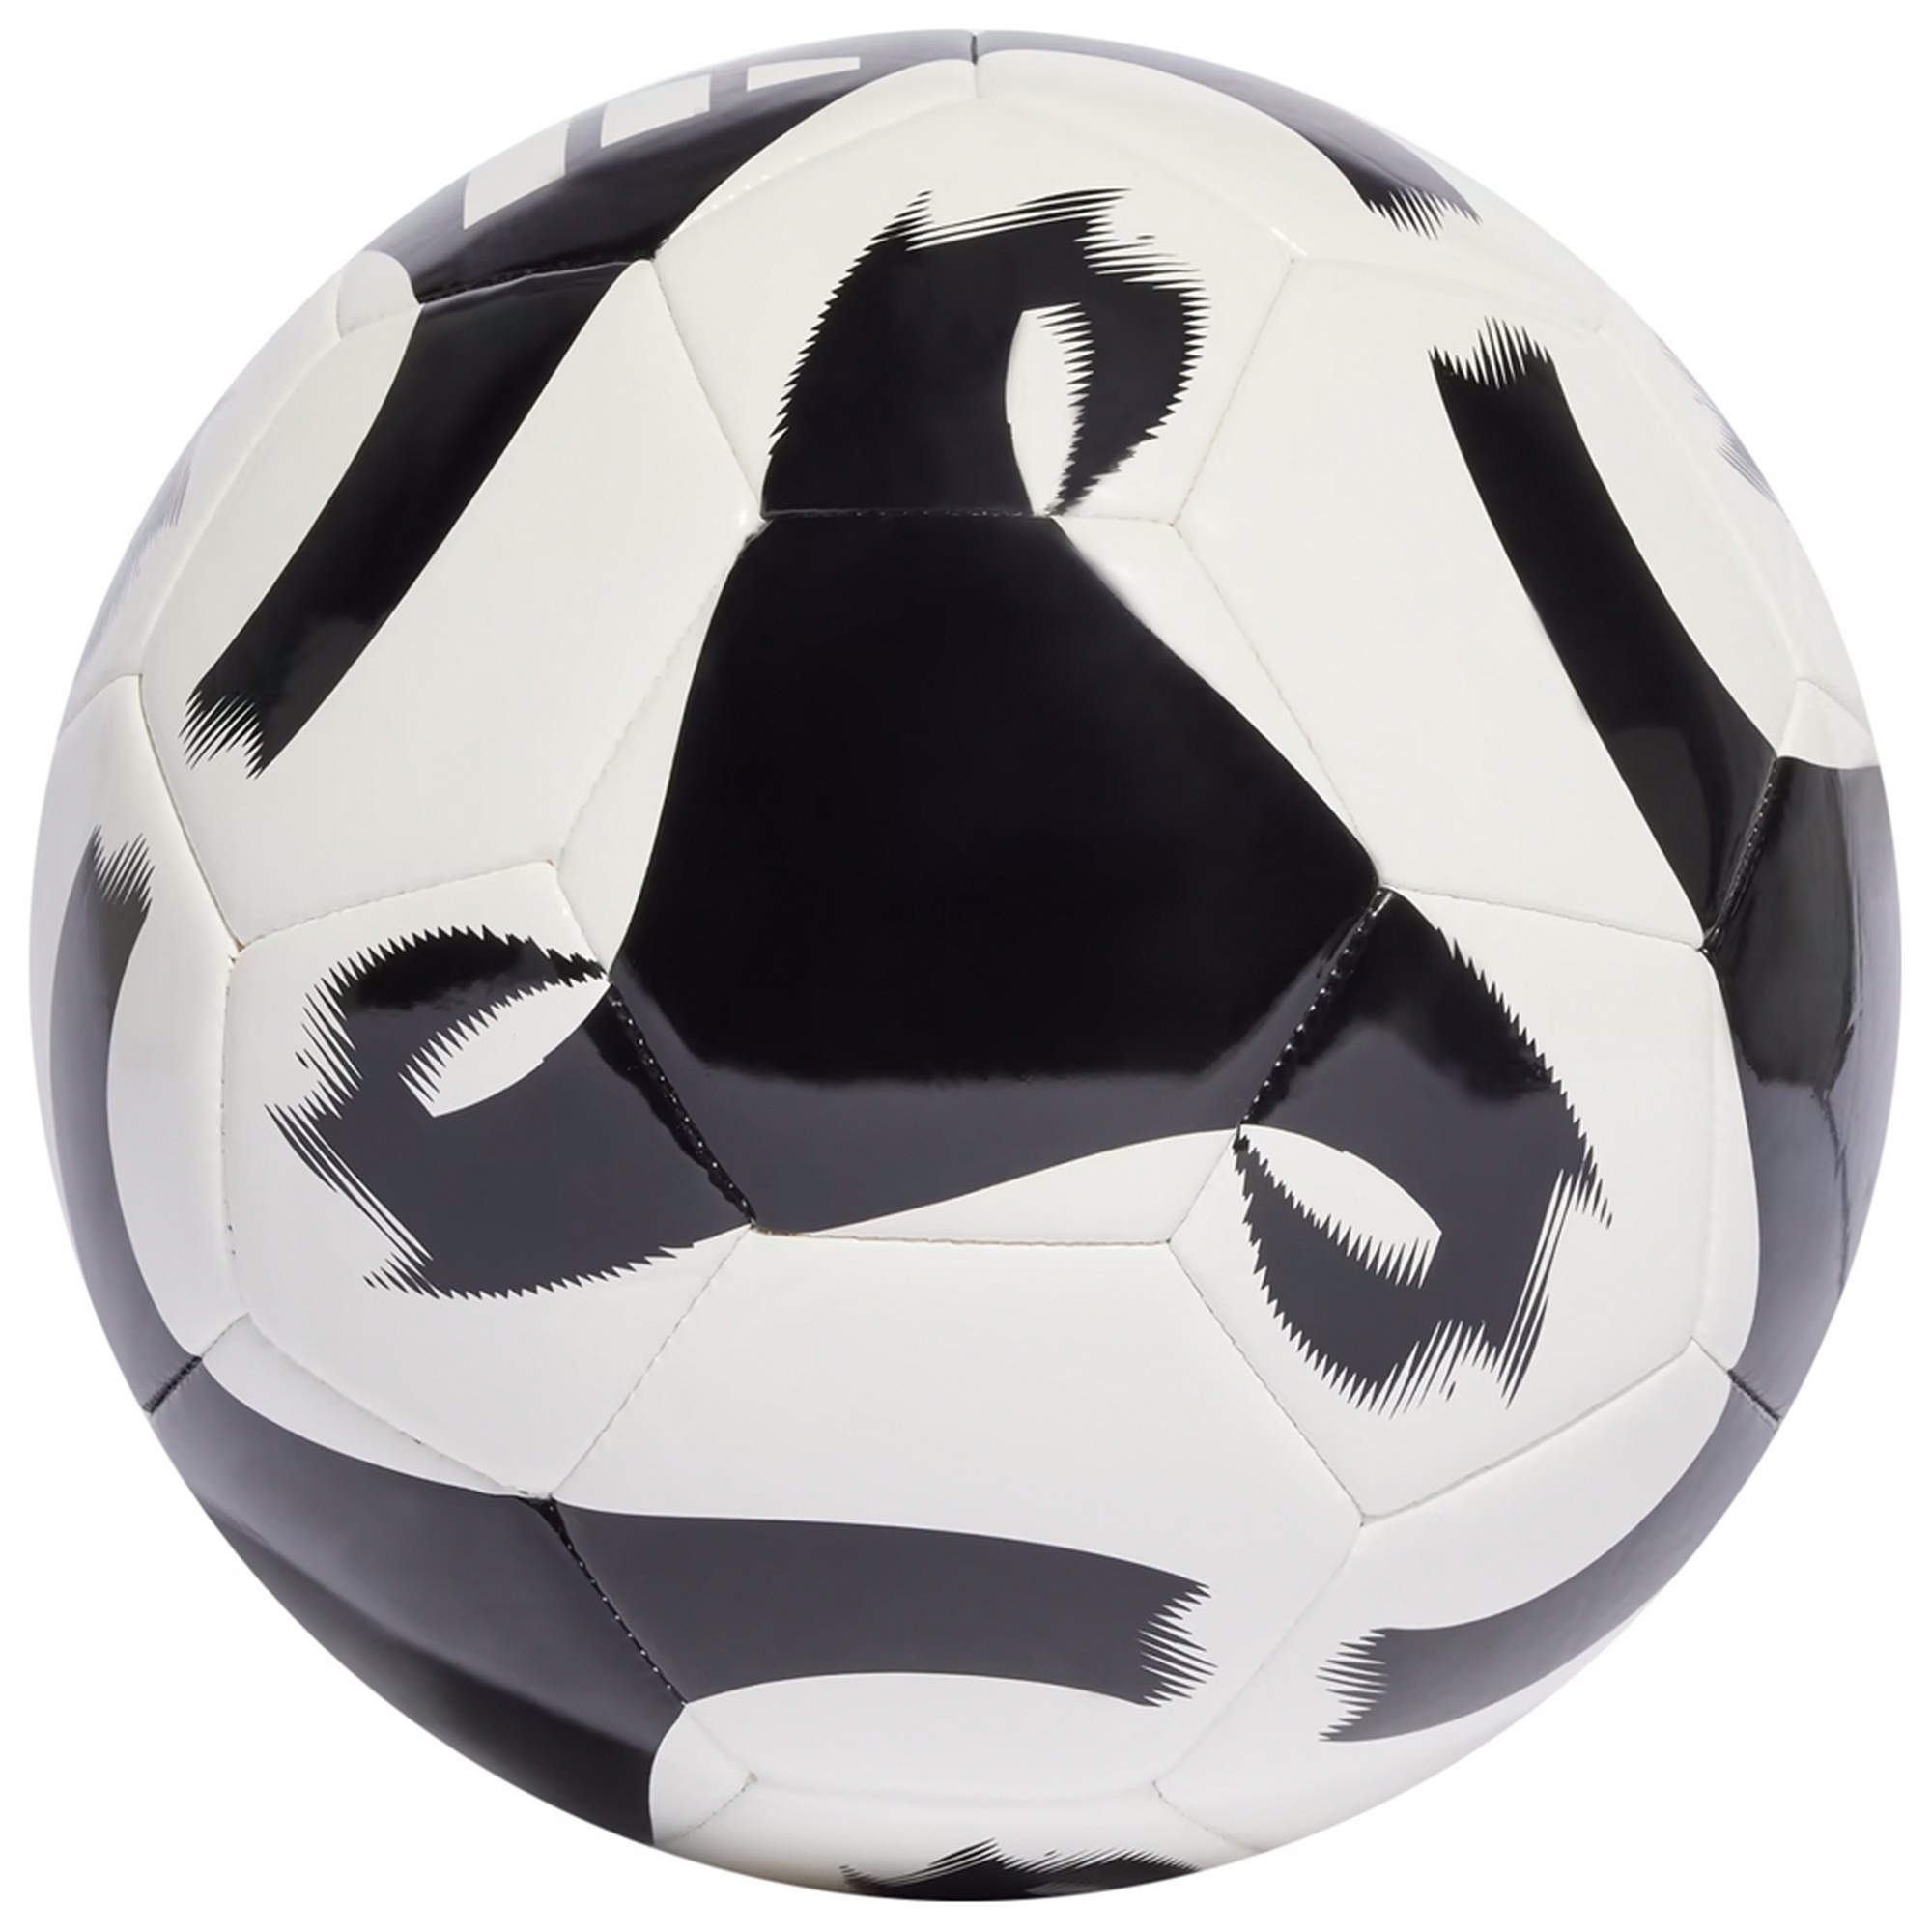 Мяч футбольный Adidas Tiro Club HT2430 р.5 2000_2000